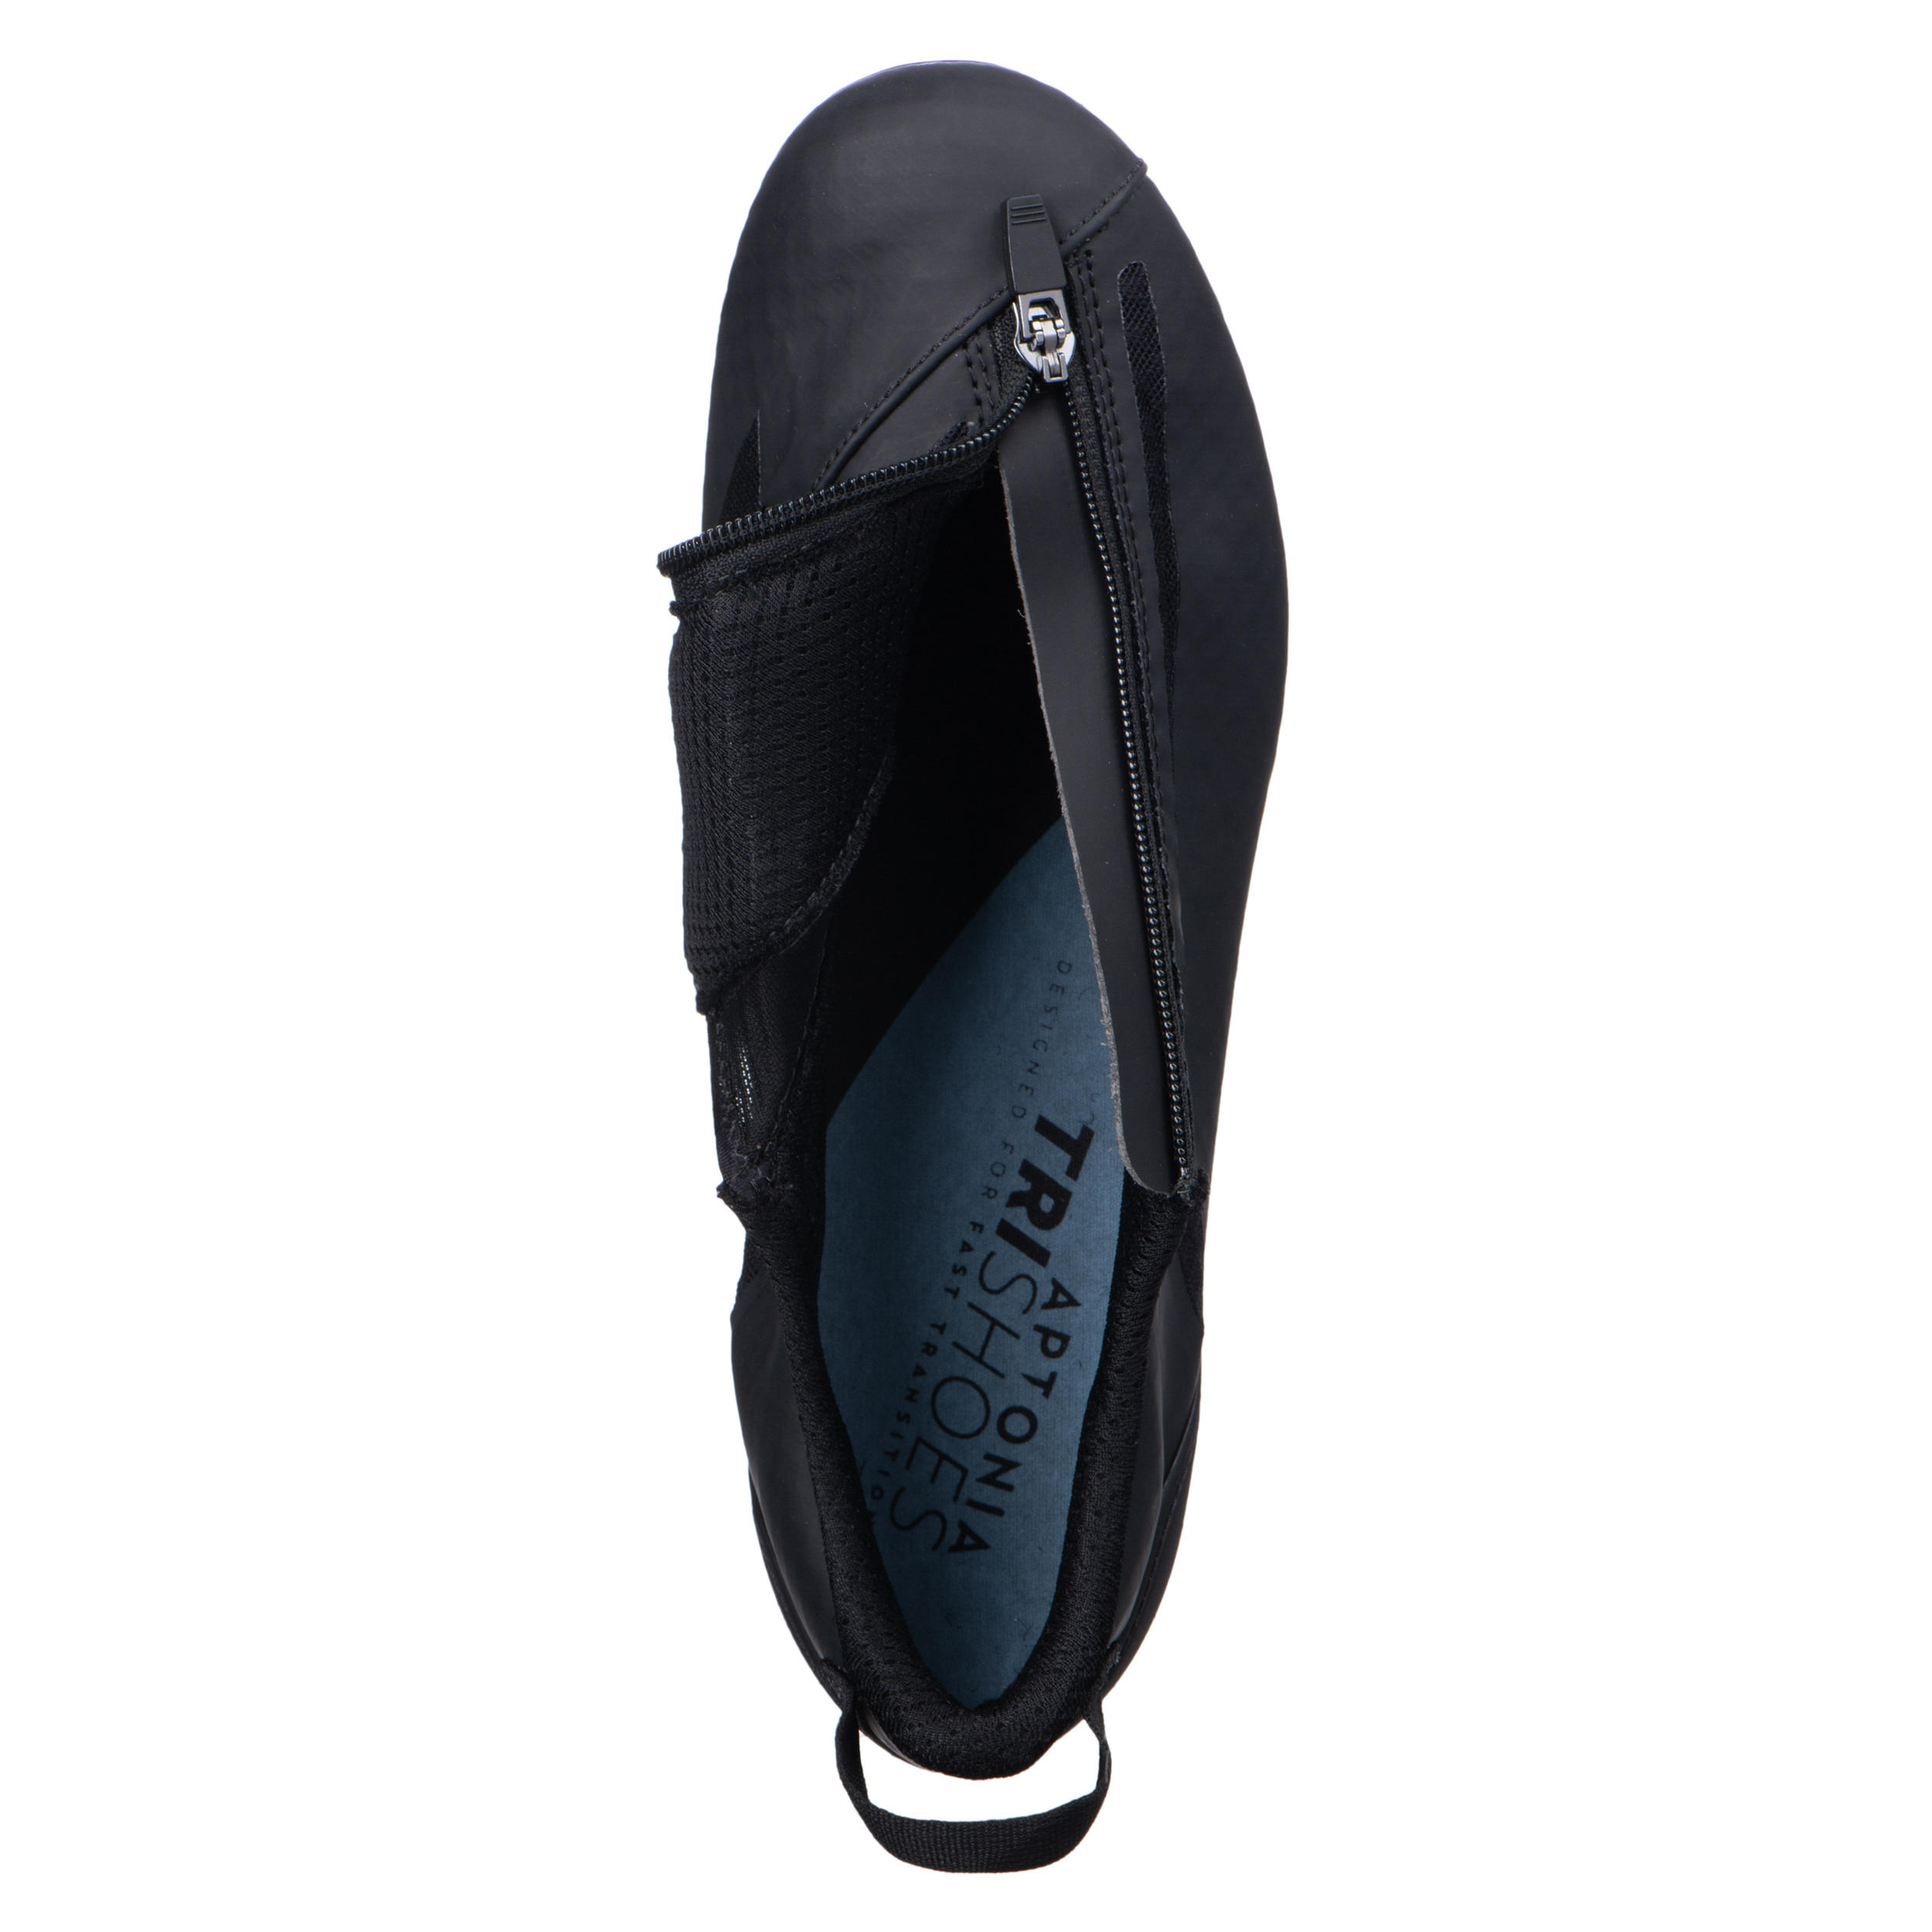 Aptonia Triathlon Cycling Shoes - Black 4/7